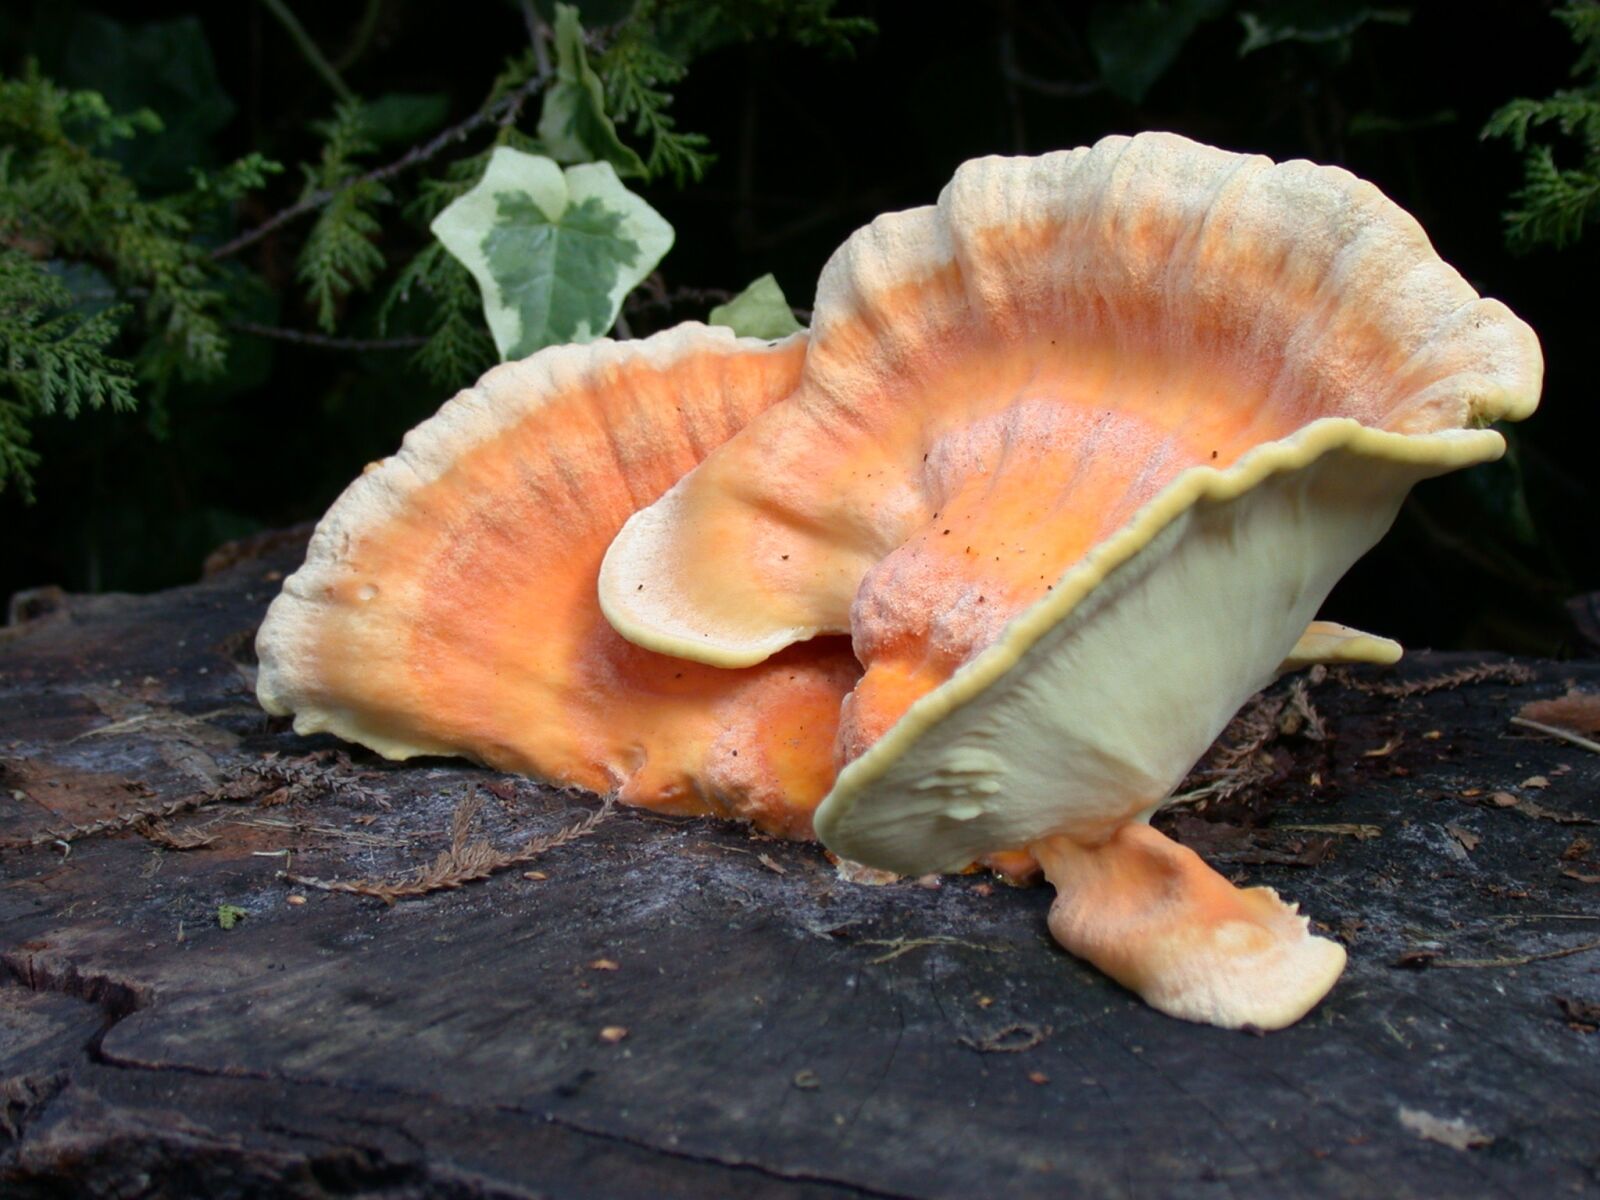 Nikon E995 sample photo. Agaric, autumn, mushroom photography